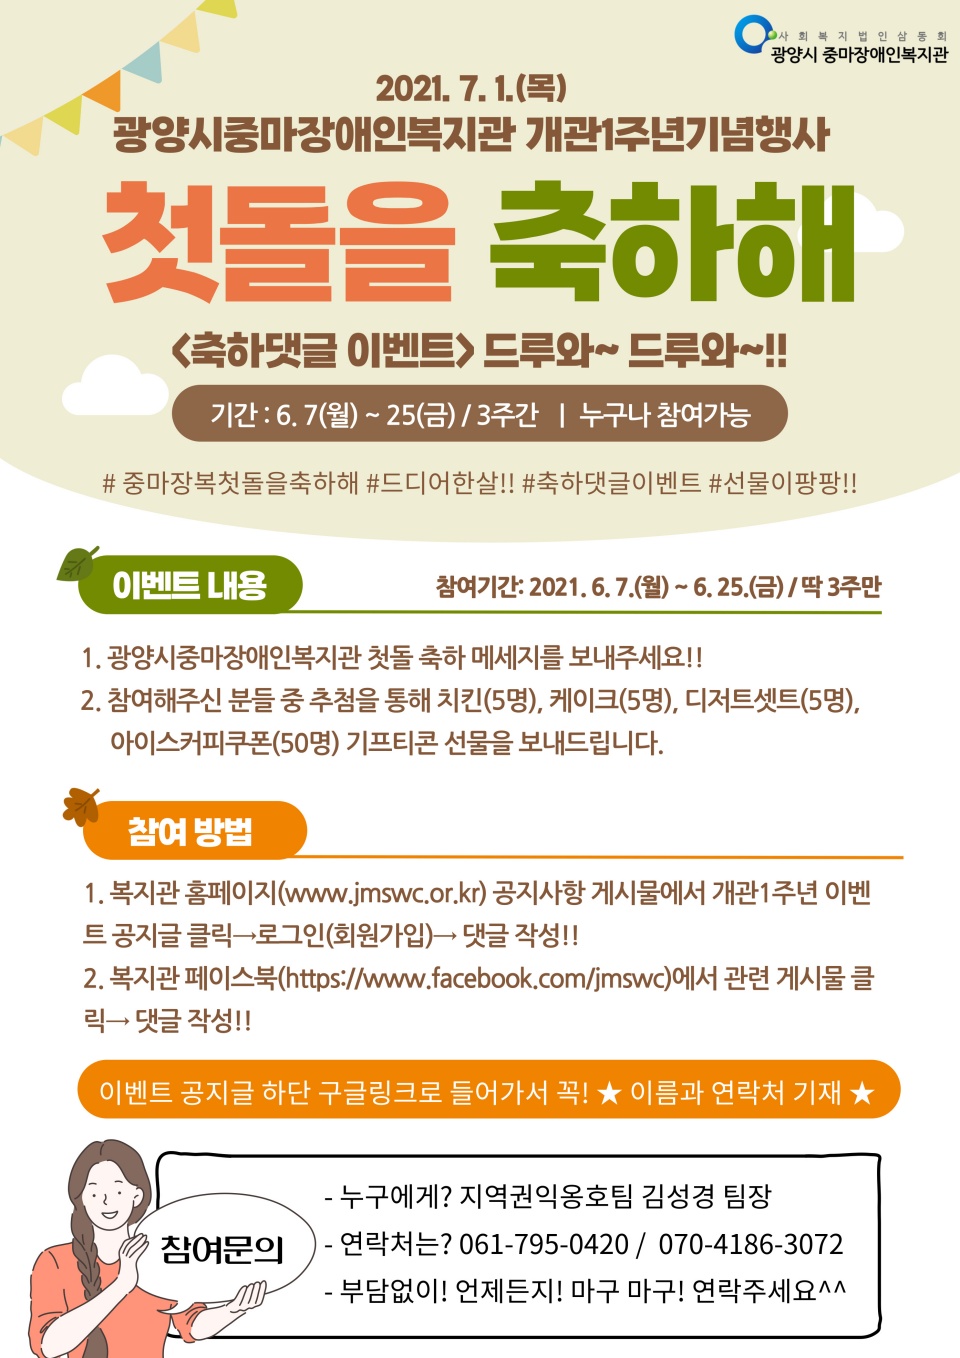 복지관 개관기념 '중마장복, 첫돌을 축하해' 댓글 이벤트에 참여해주세요!! 